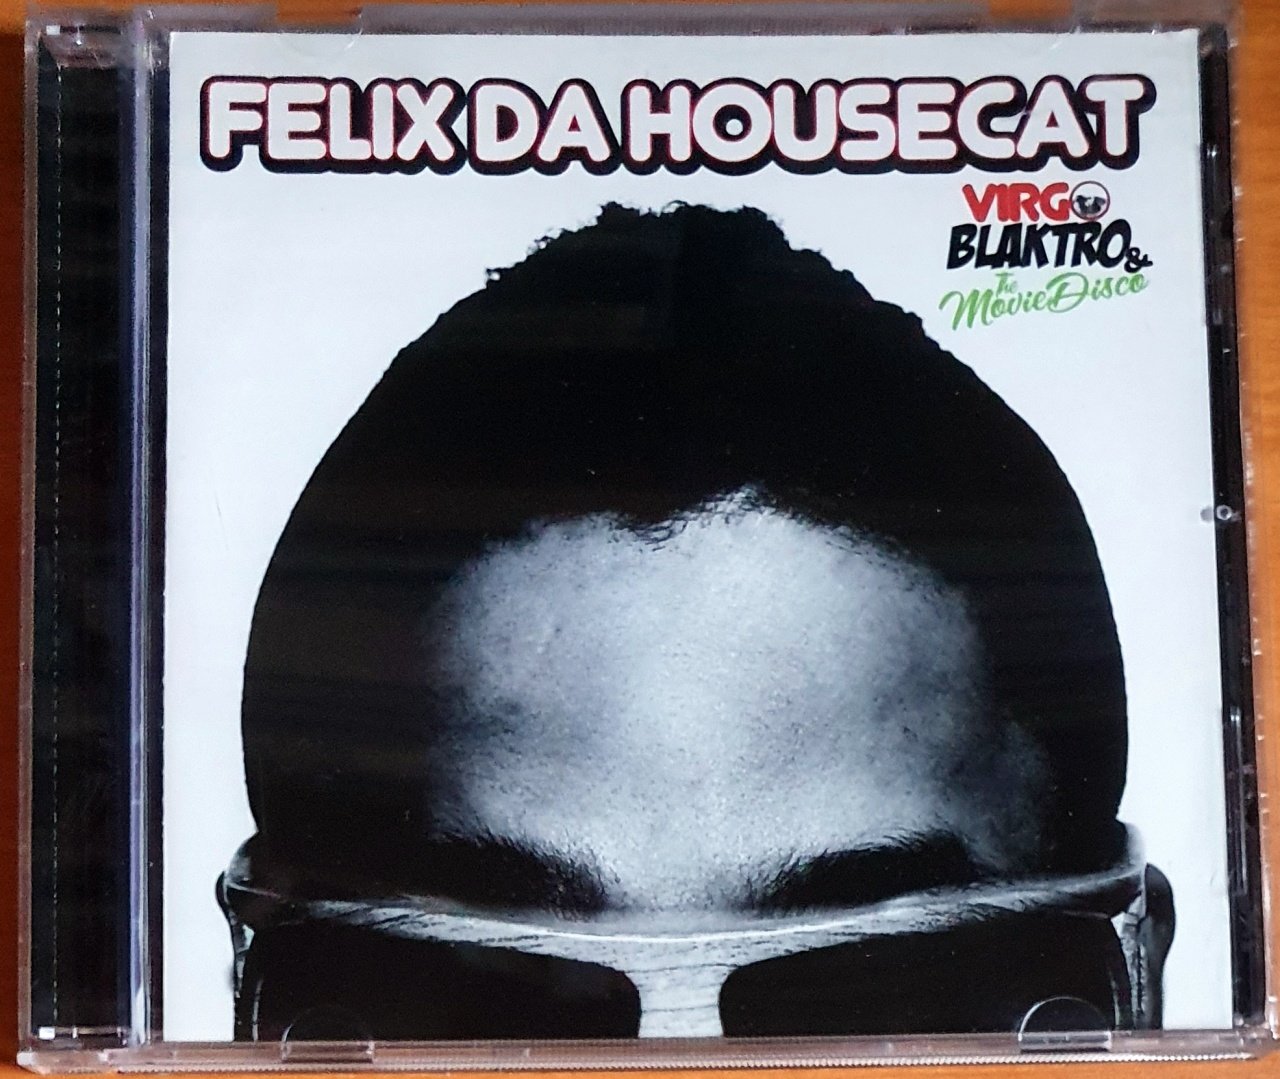 FELIX DA HOUSECAT - VIRGO, BLAKTRO & THE MOVIE DISCO (2007) - CD 2.EL